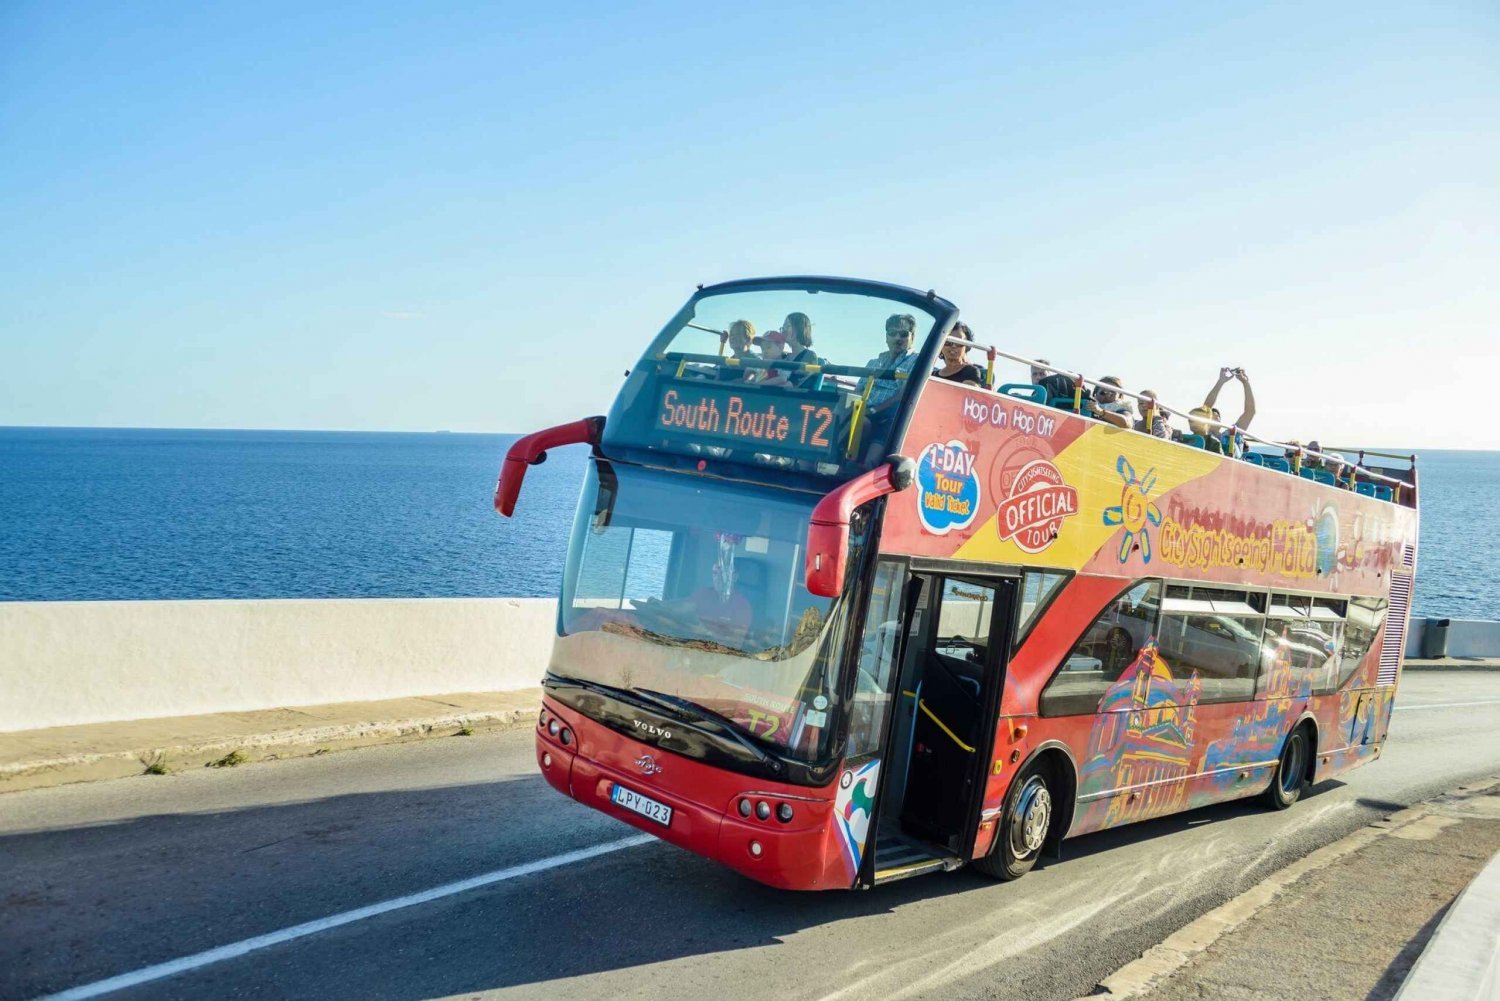 Malta: Malta Island Bus Tour with Optional Boat Tour